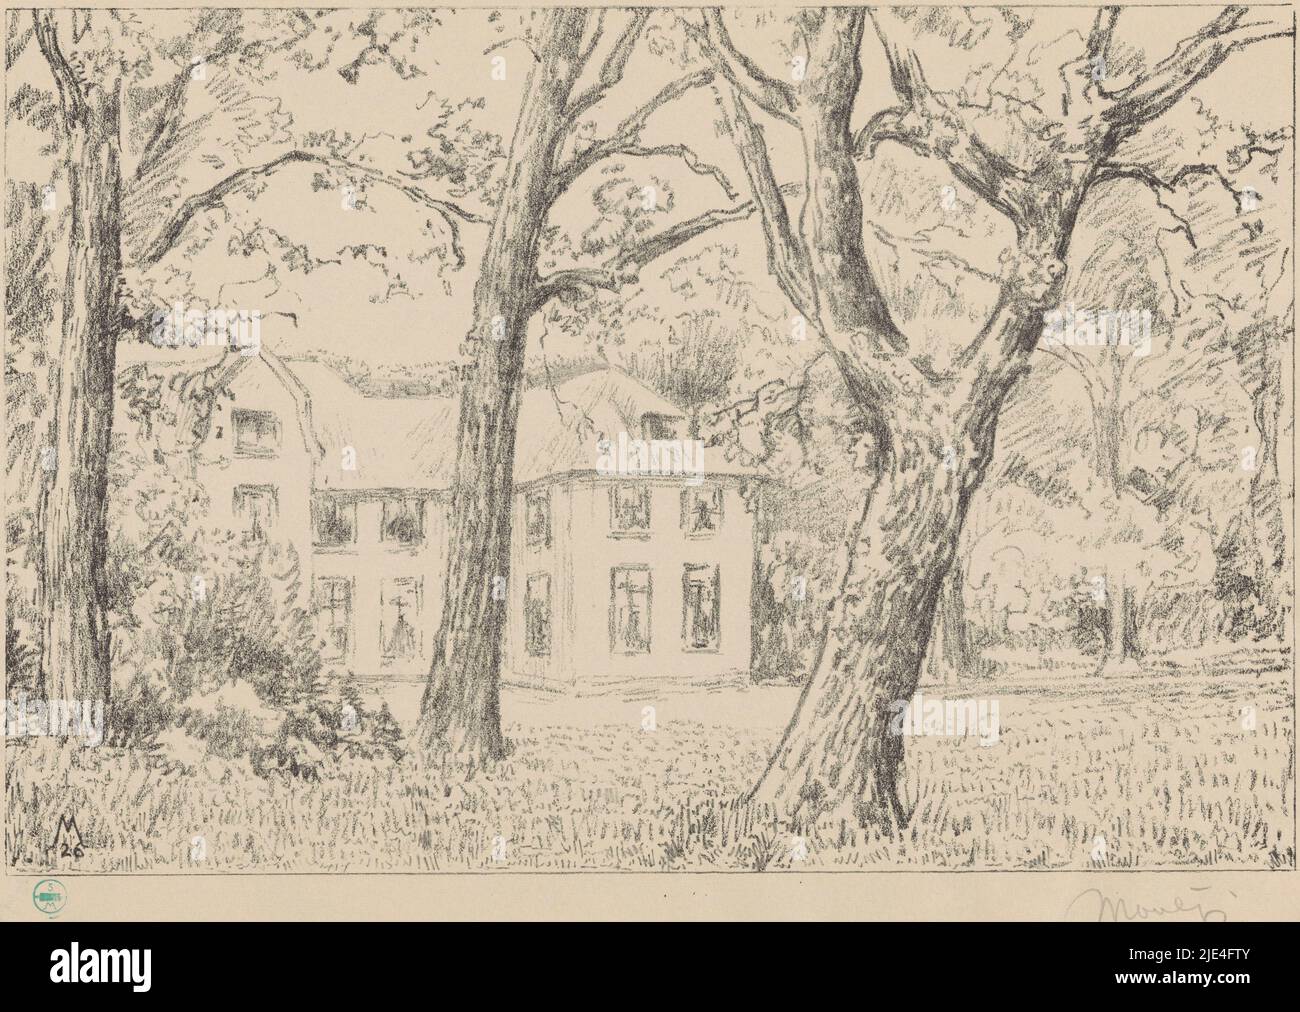 Vista de la villa Groot Haesebroek desde el jardín, Simon Moulijn, 1926, en el primer plano tres árboles., imprenta: Simon Moulijn, (firmado por el artista), 1926, papel, h 297 mm x w 424 mm Foto de stock